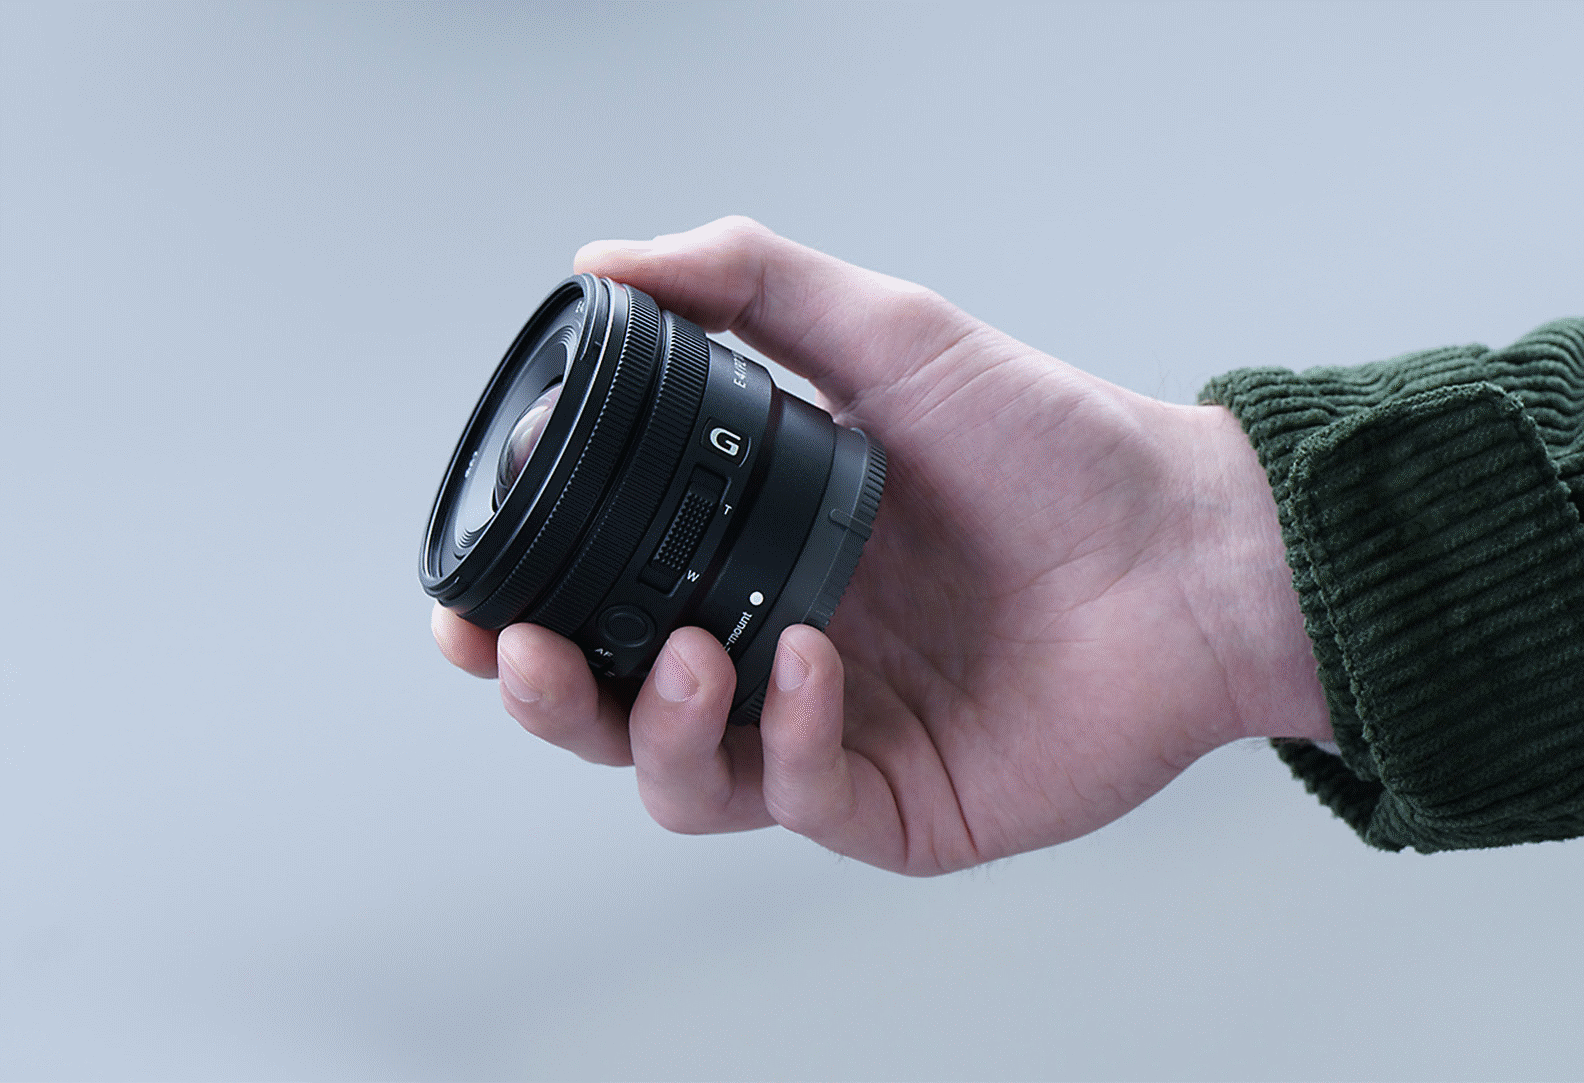 תמונת כף יד של אדם המחזיק את העדשה E PZ 10-20mm F4 G, להדגמה שהעדשה קטנה מספיק כדי להיכנס לידו